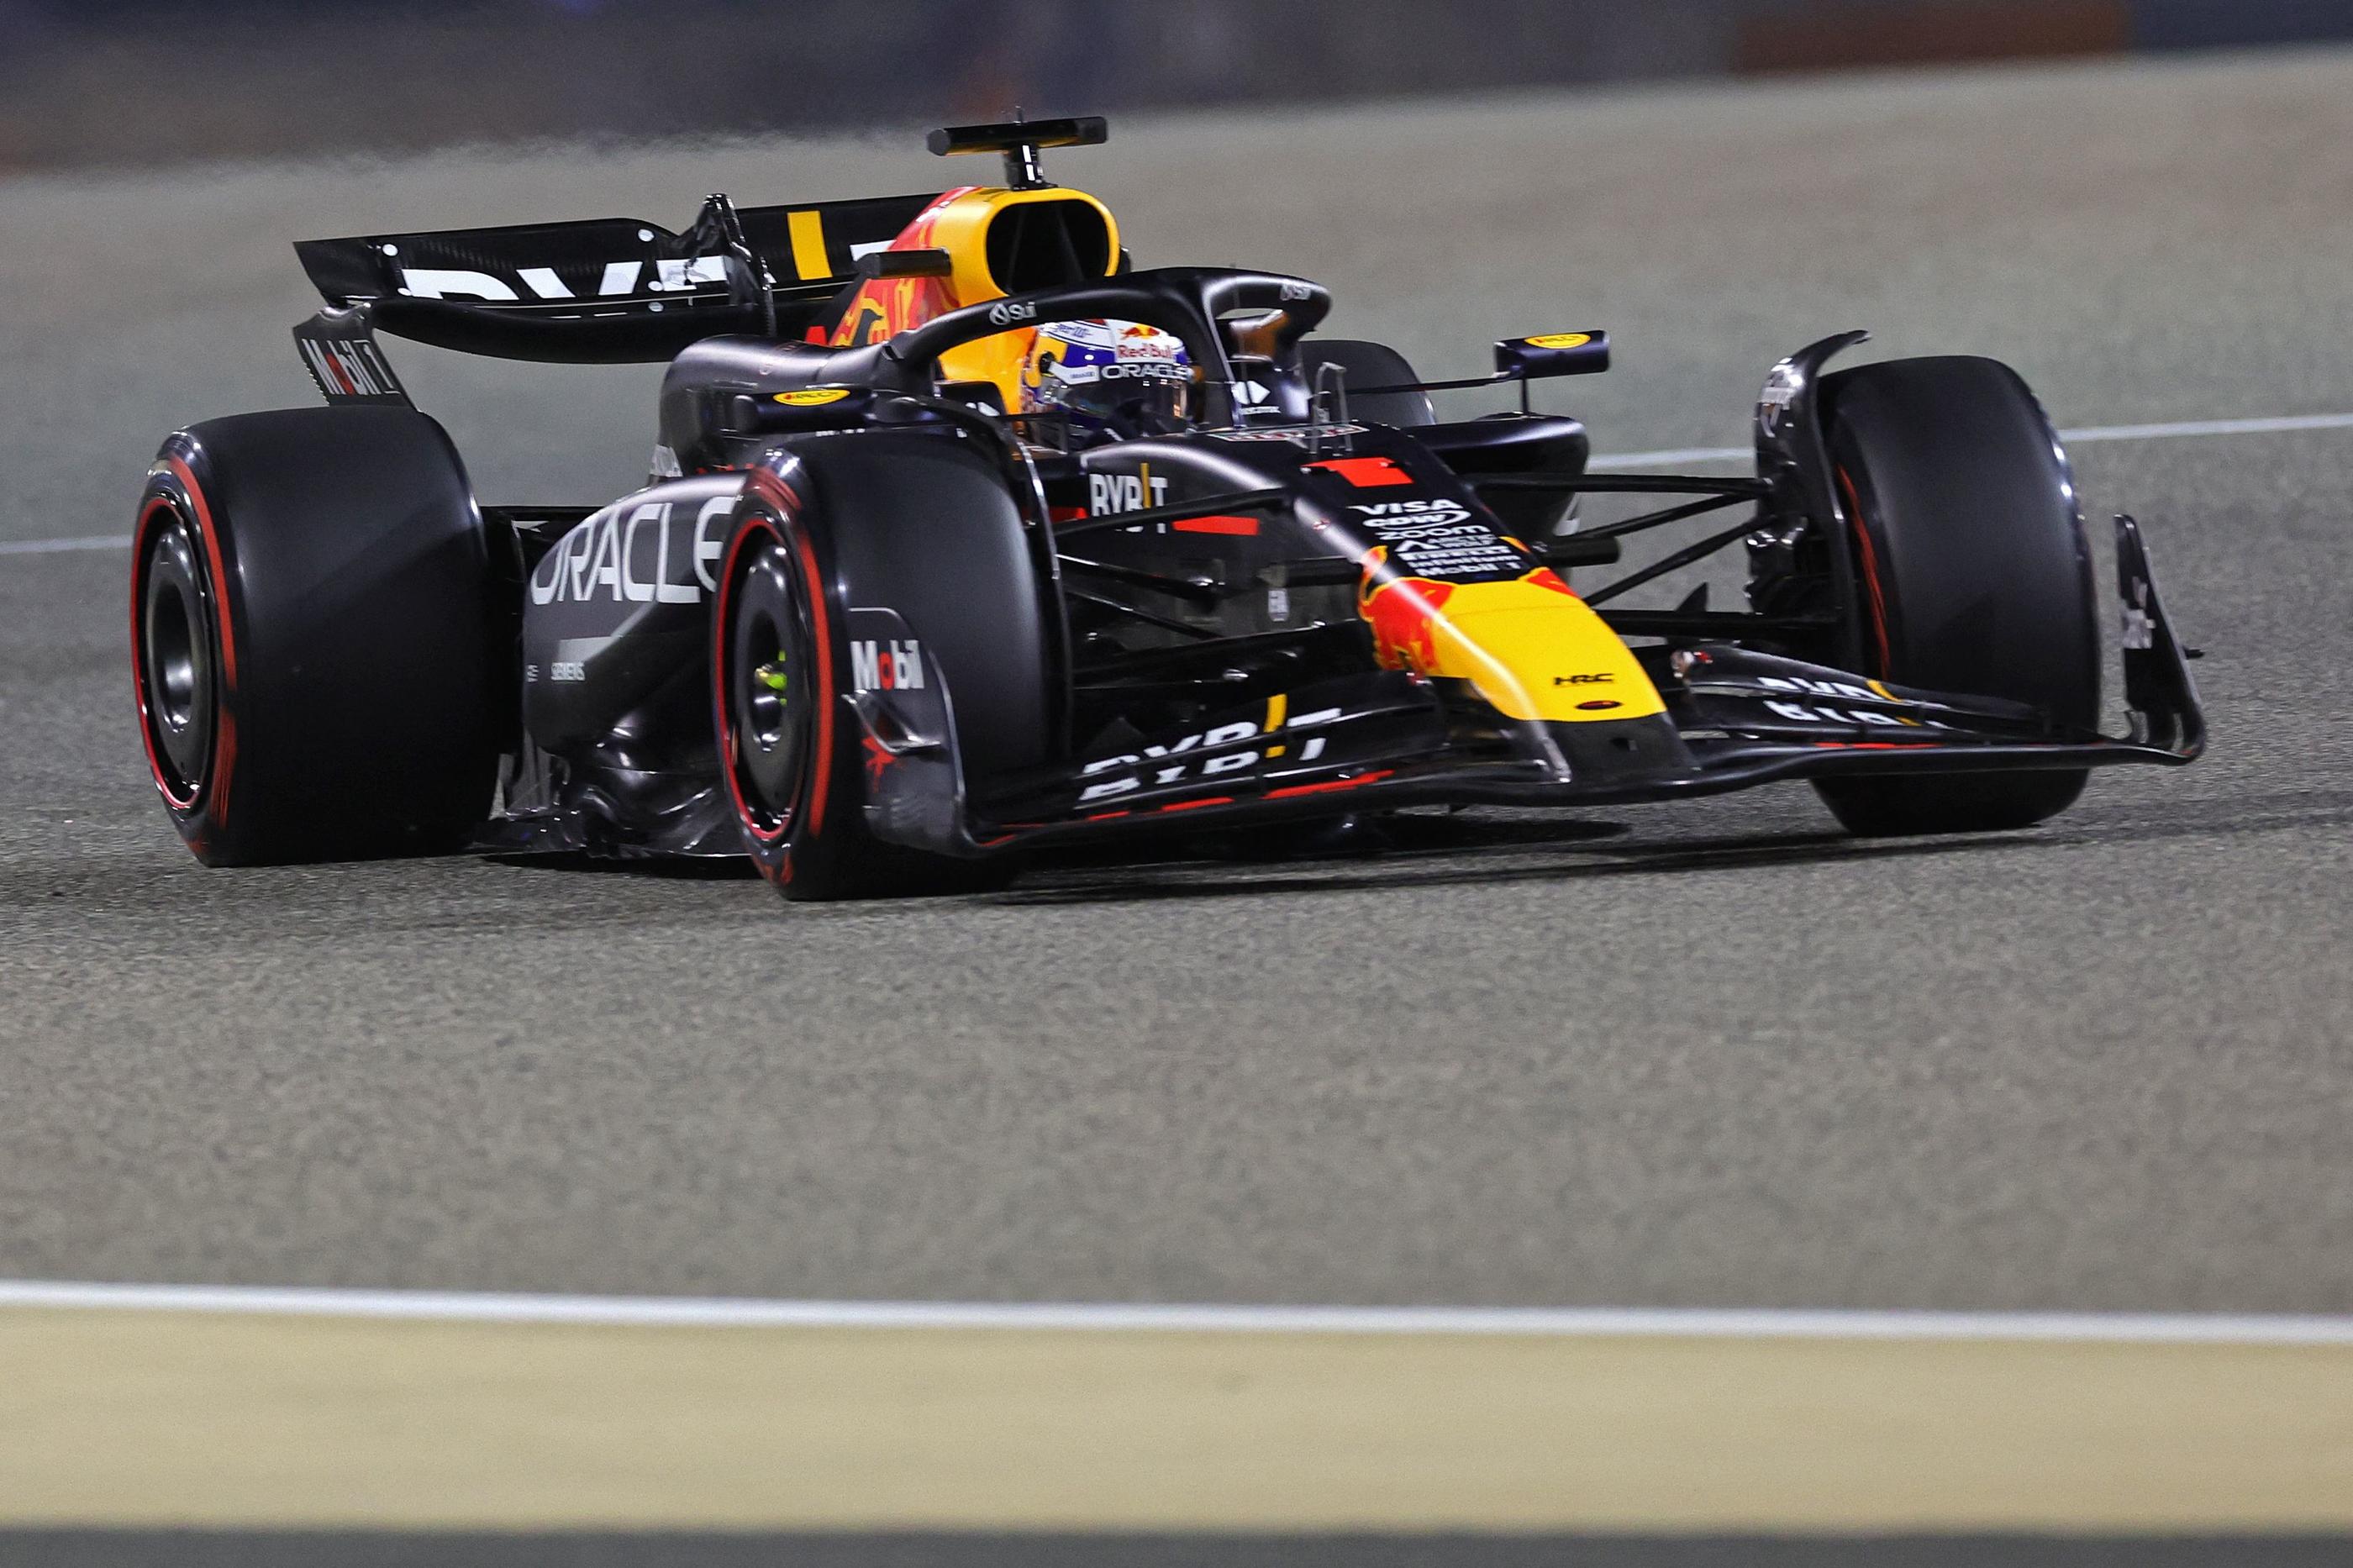 Max Verstappen a dominé la première course de la saison ce samedi. (Photo by Giuseppe CACACE / AFP)